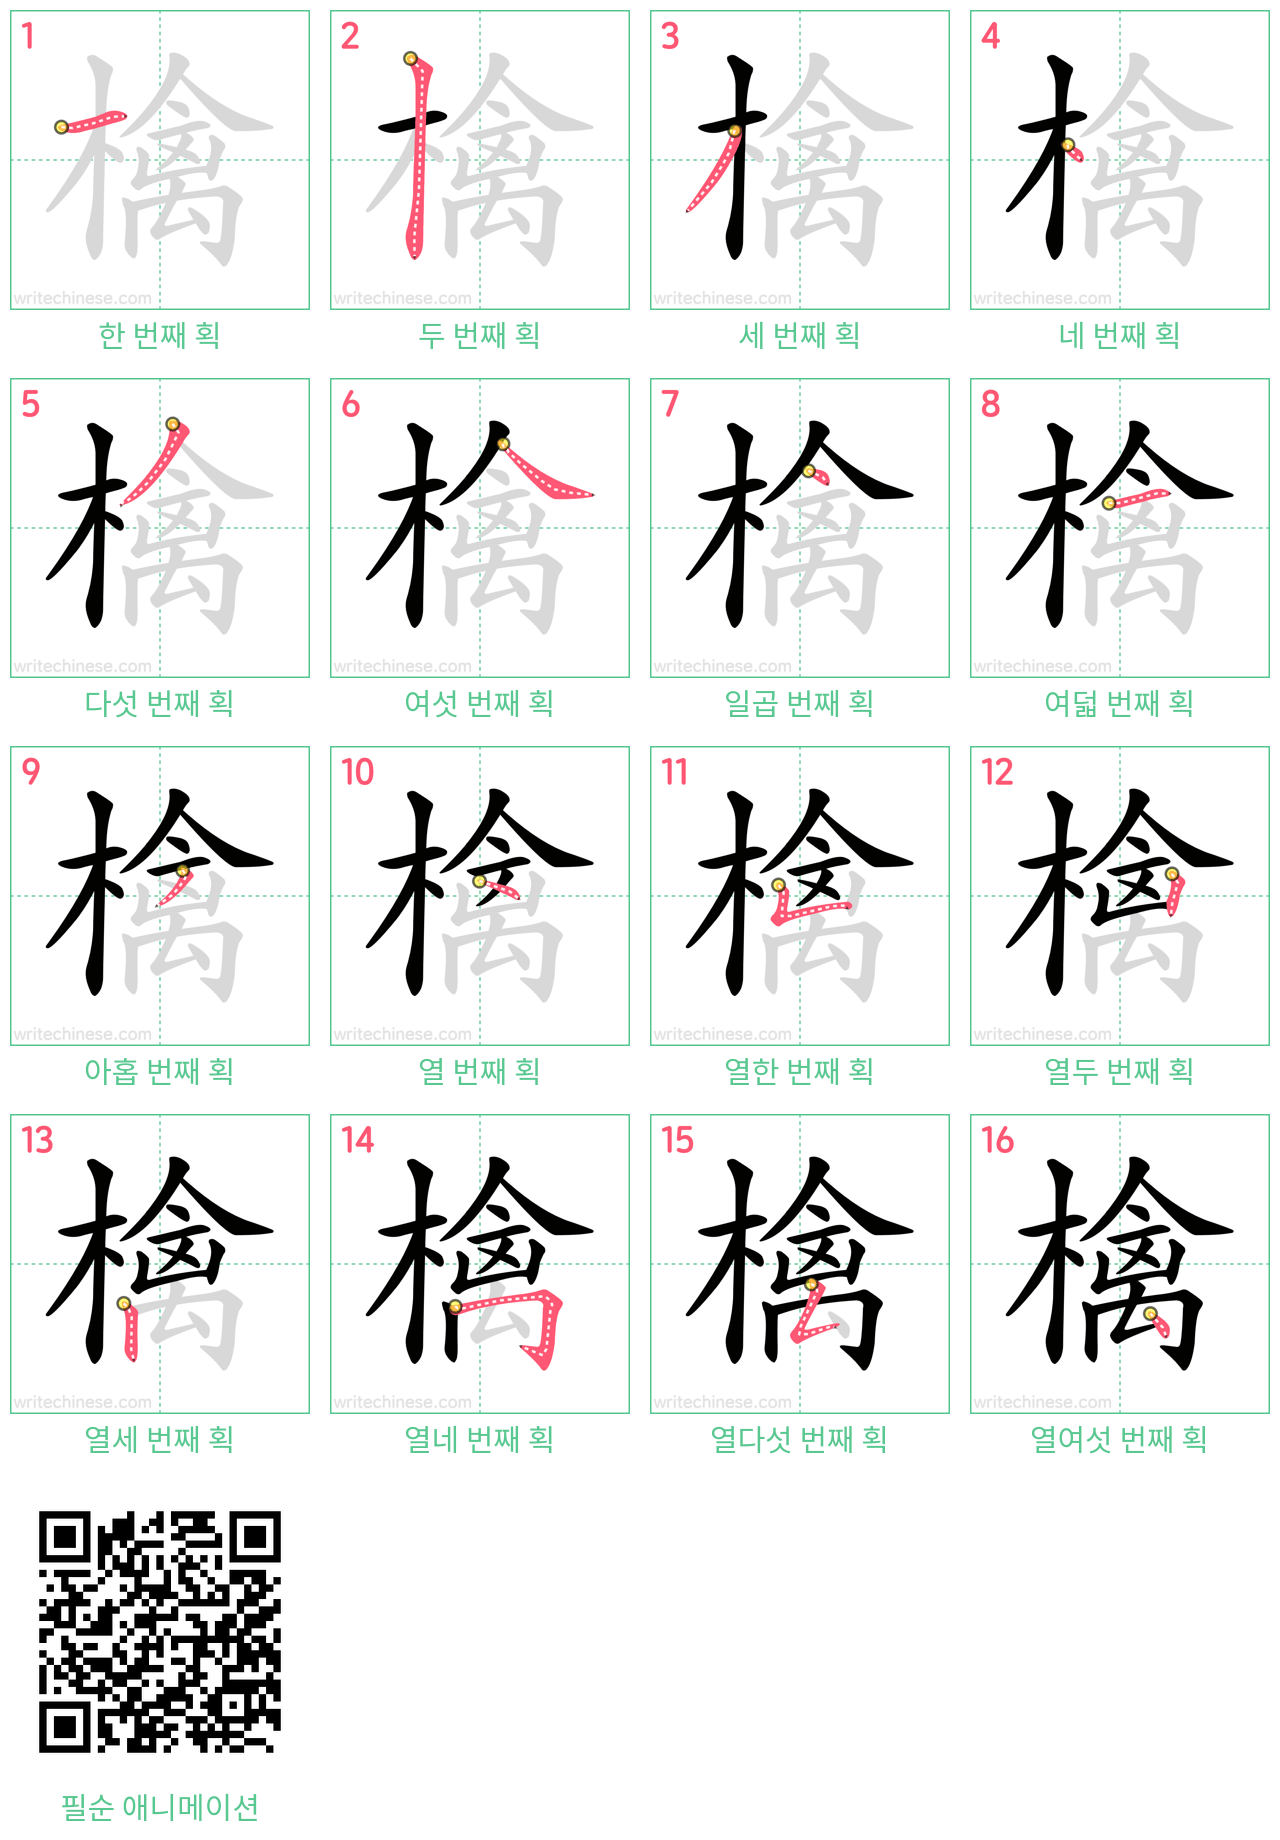 檎 step-by-step stroke order diagrams